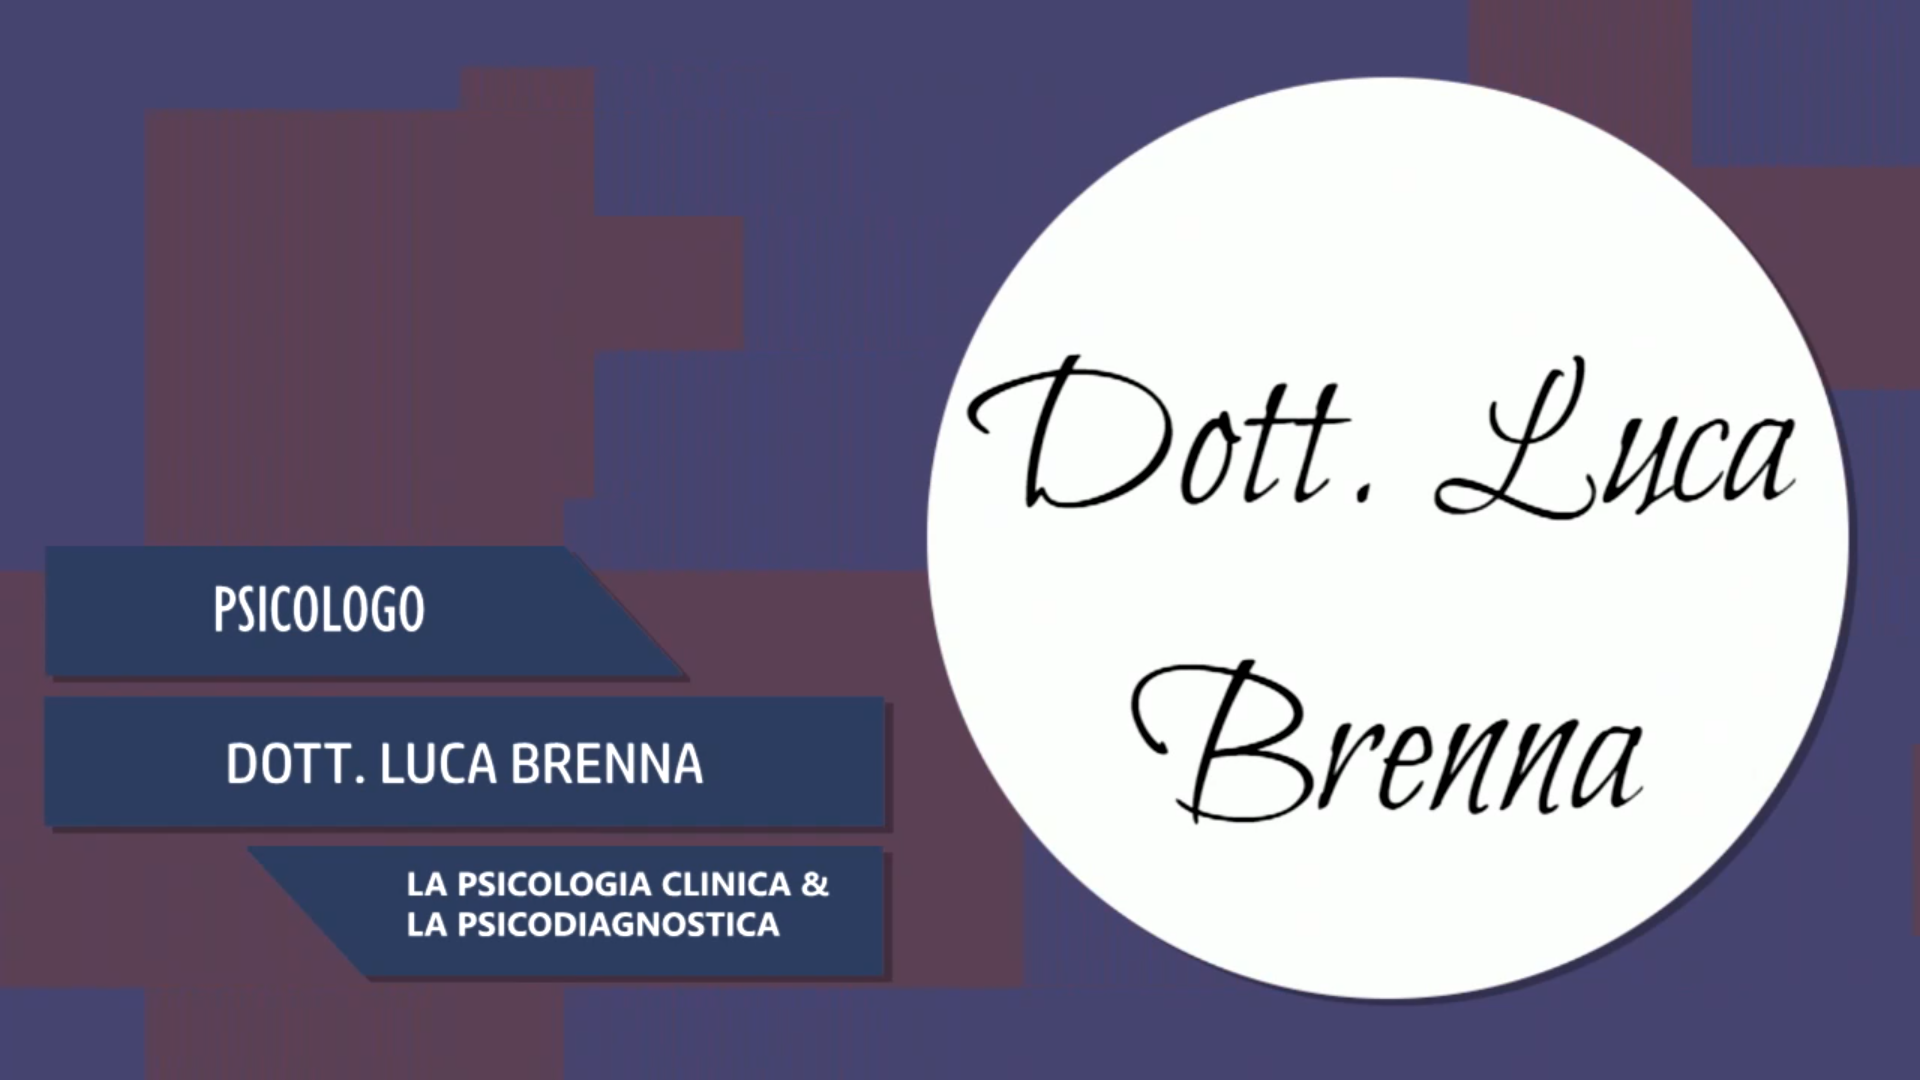 Intervista al Dott. Luca Brenna – La Psicologia clinica & Psicodiagnostica